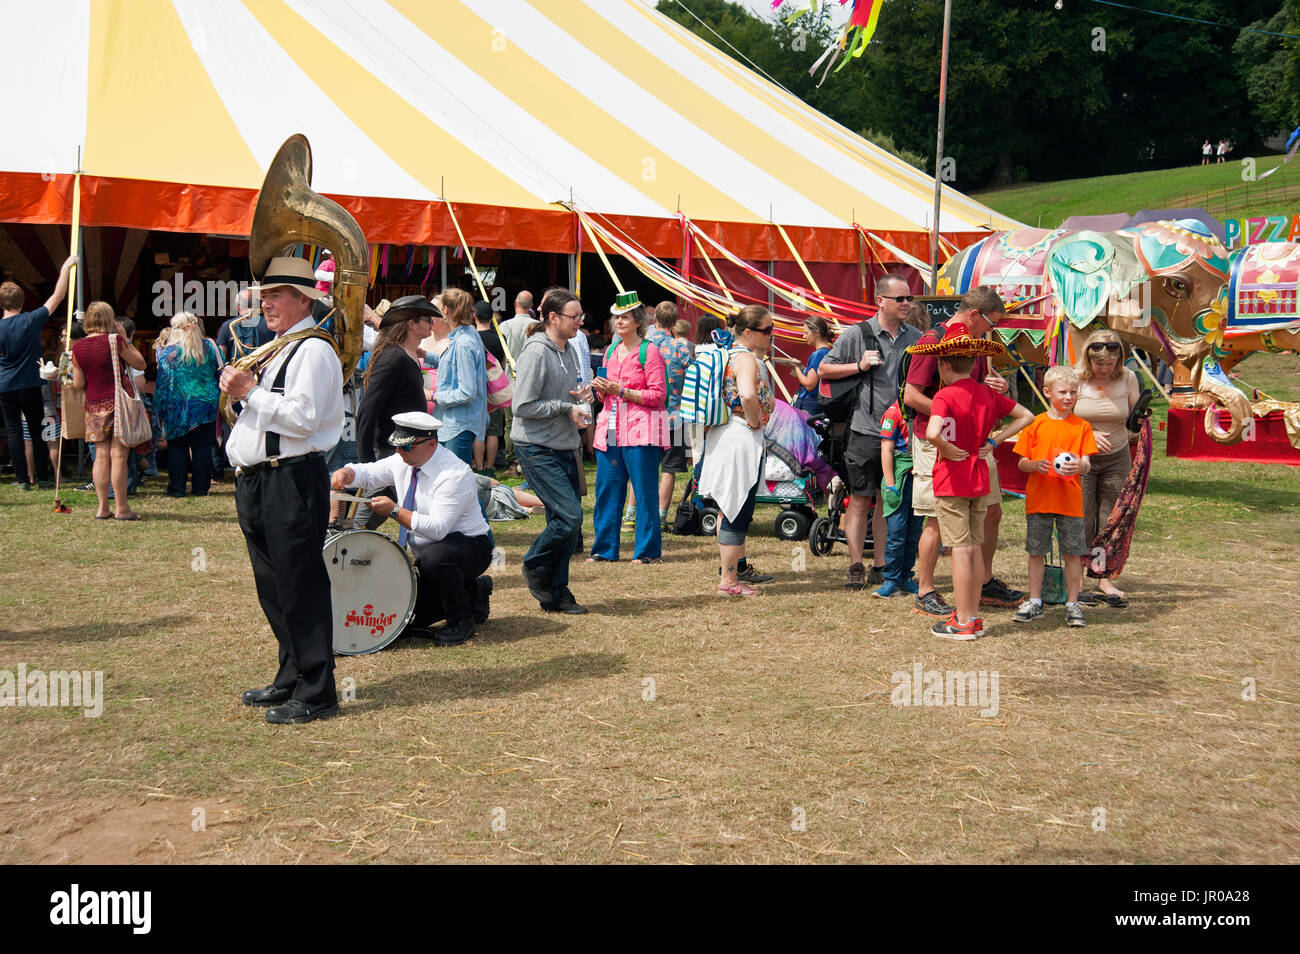 Musiciens et public se mélangent à l'extérieur d'un chapiteau au Festival Port Eliot Cornwall UK Banque D'Images